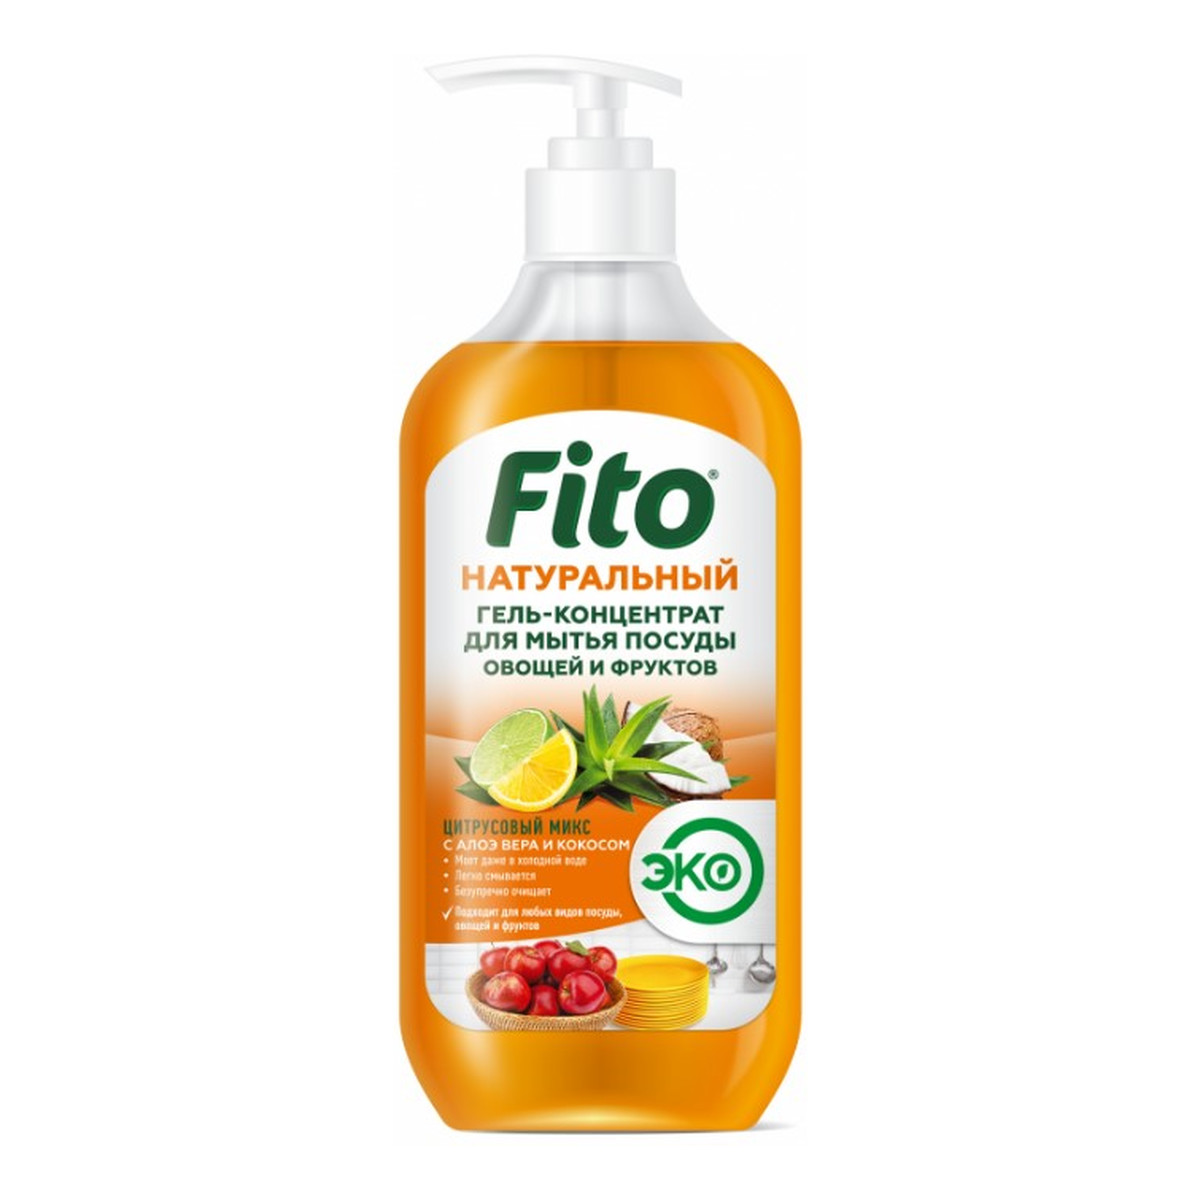 Fitokosmetik Fito Naturalny koncentrat w żelu do mycia naczyń i owoców Cytrusowy Mix 490ml